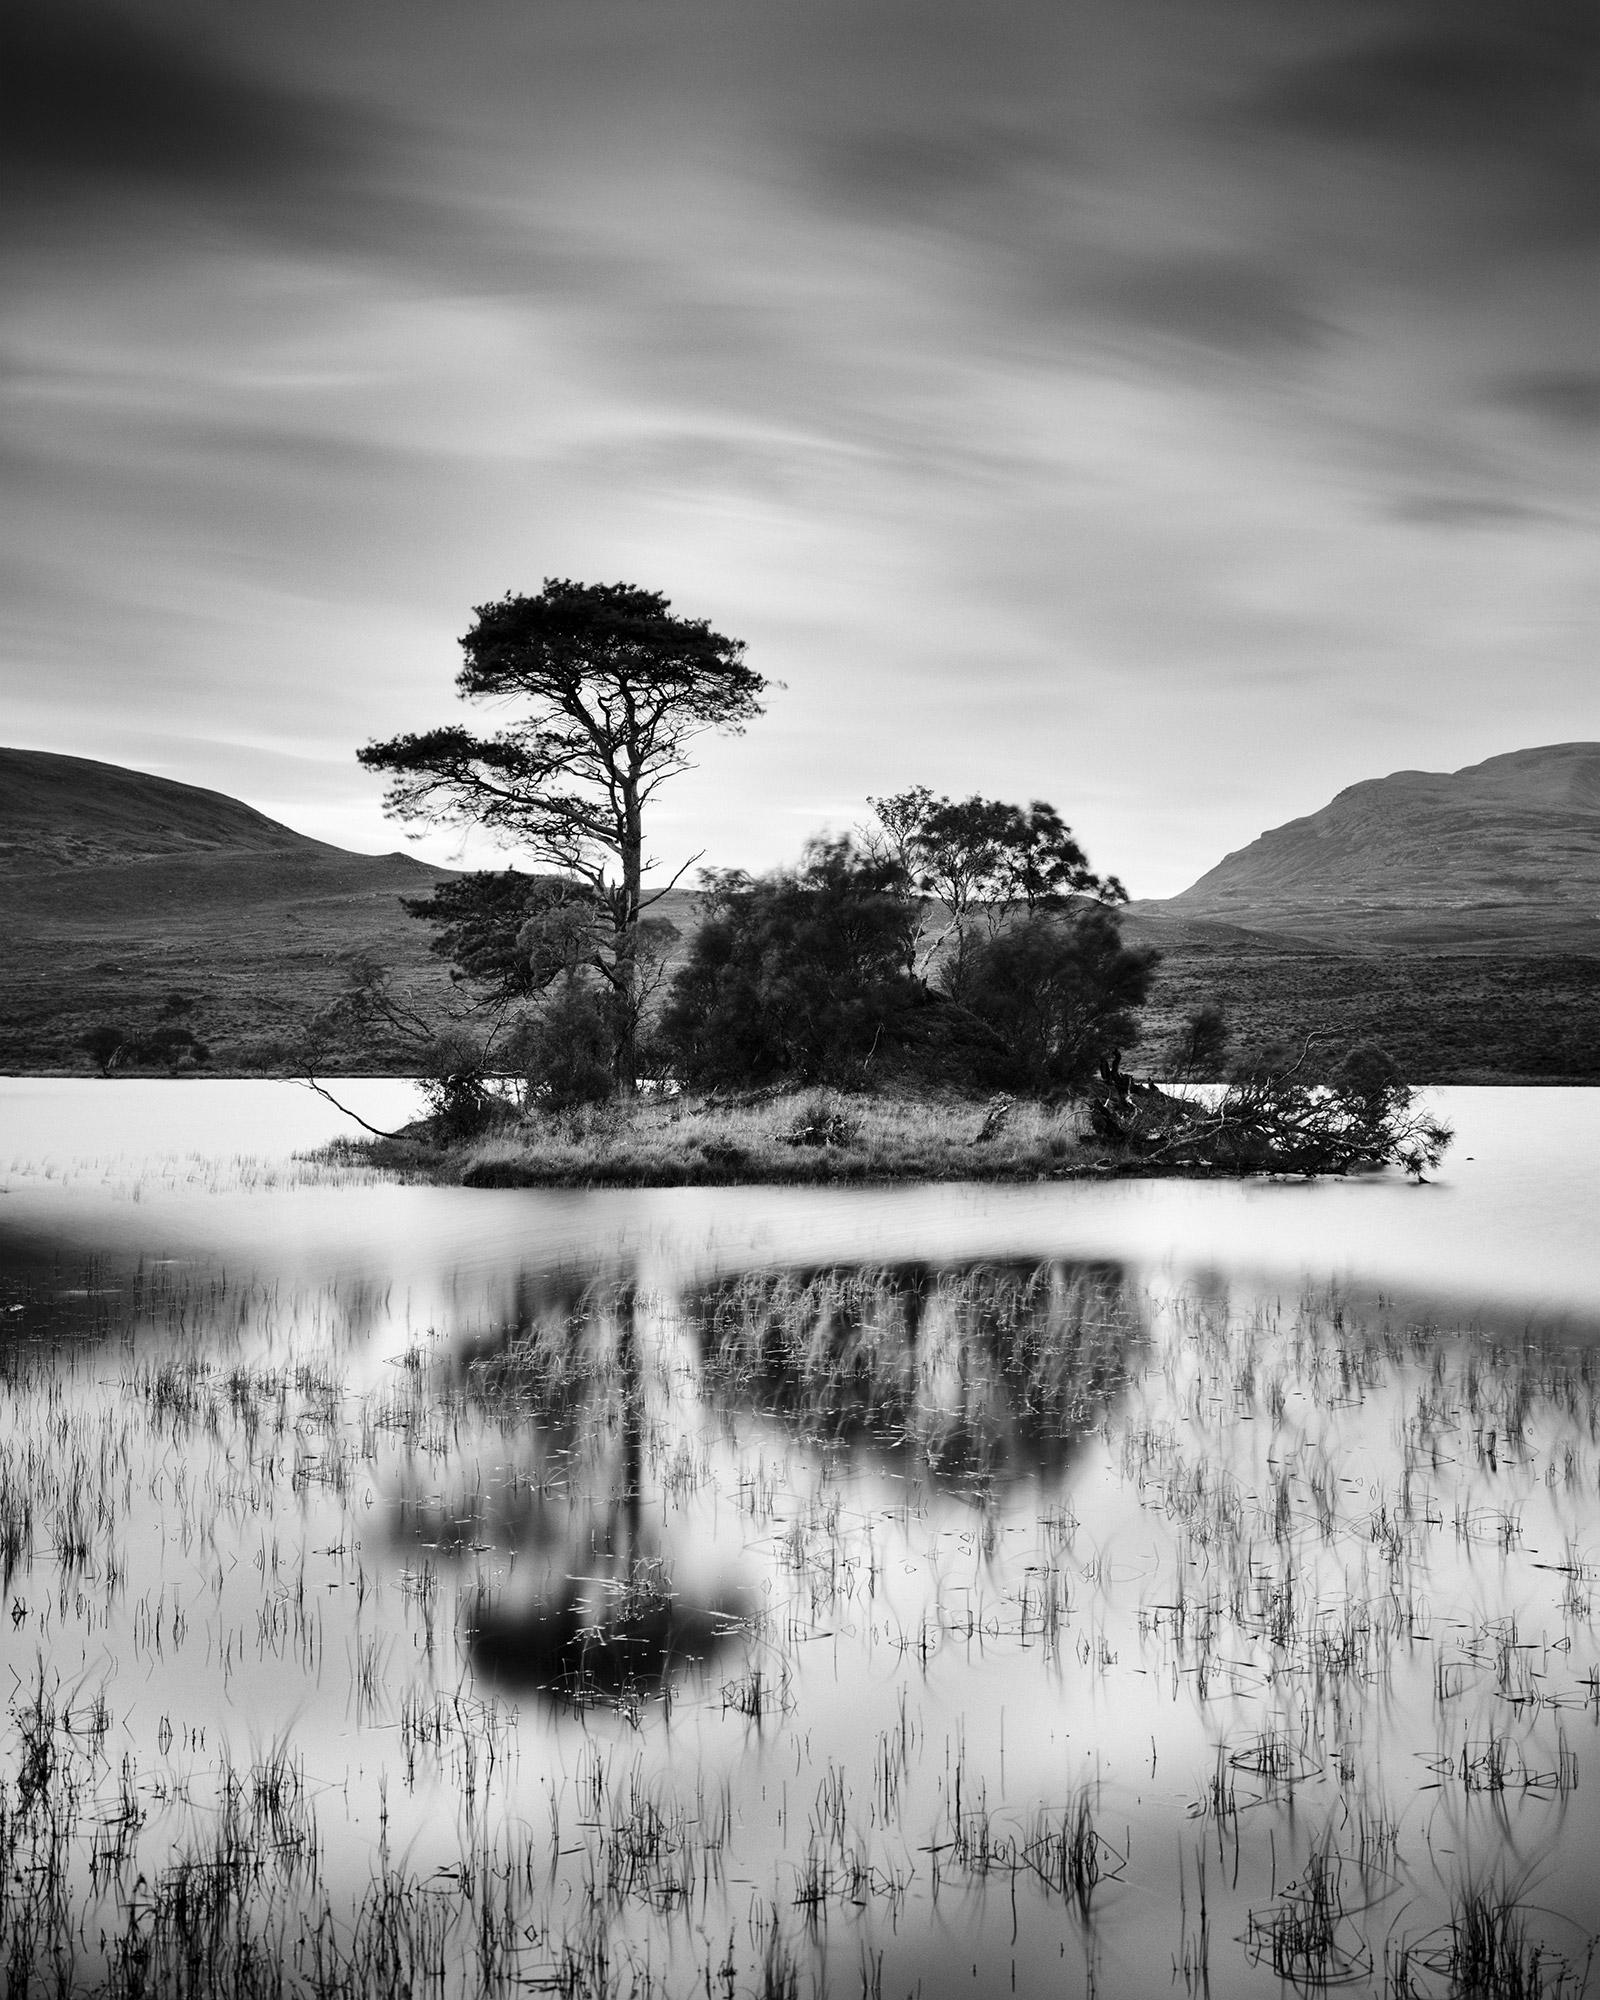 Gerald Berghammer Black and White Photograph – Nach dem Sonnenuntergang, Baum, Insel, Schottland, Schwarz-Weiß-Landschaftsfotografie